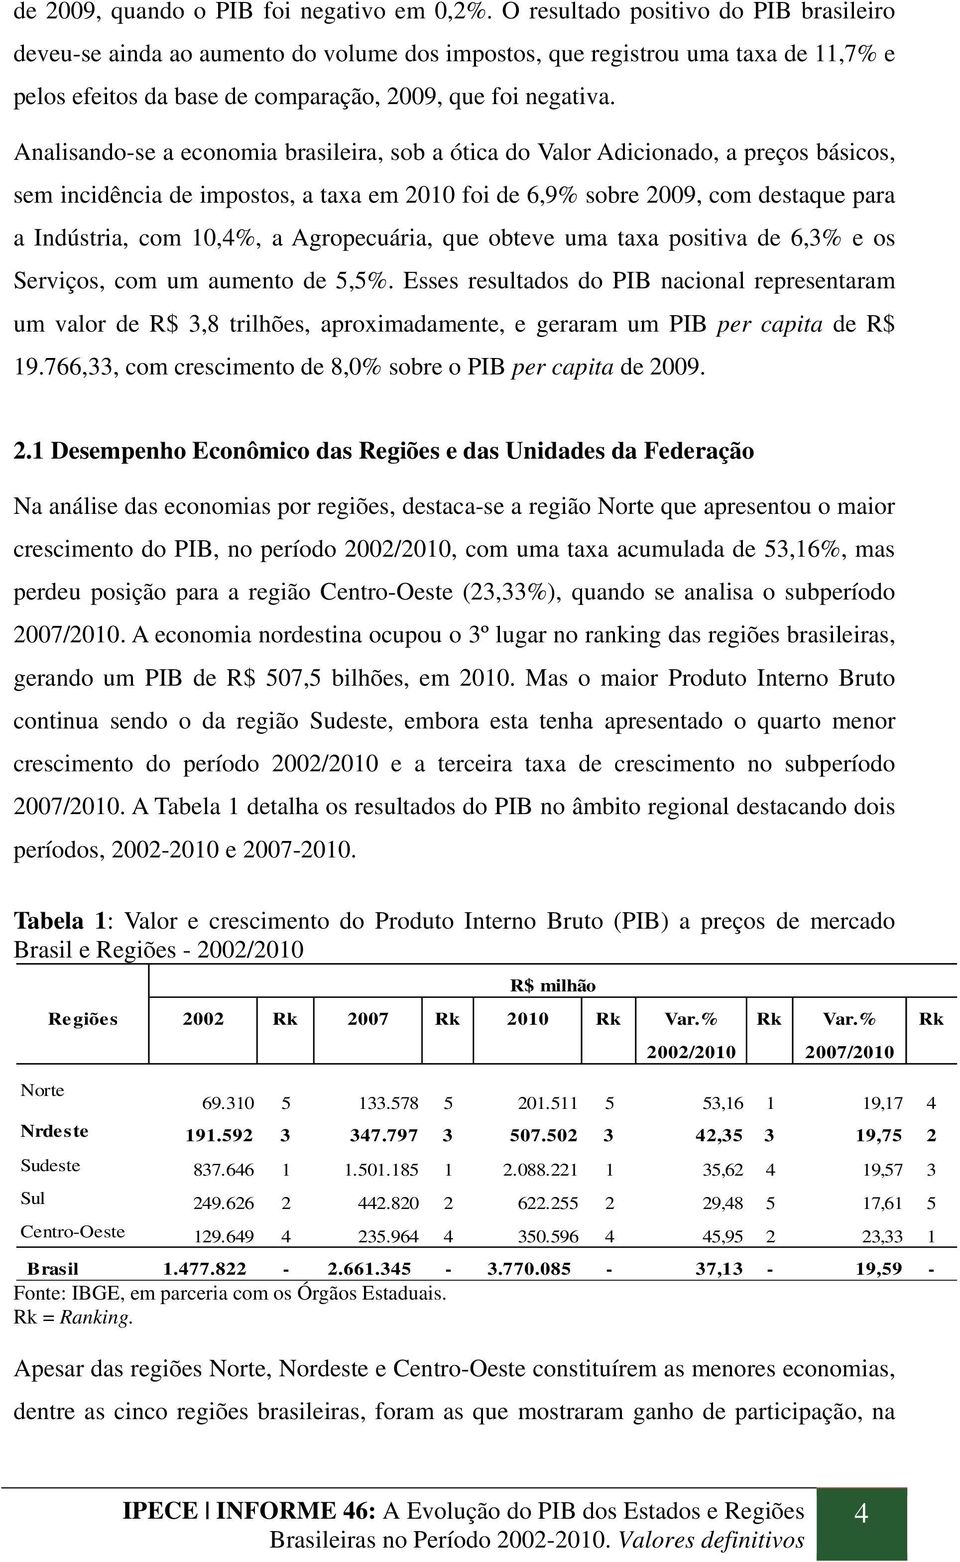 Analisando-se a economia brasileira, sob a ótica do Valor Adicionado, a preços básicos, sem incidência de impostos, a taxa em 2010 foi de 6,9% sobre 2009, com destaque para a Indústria, com 10,4%, a